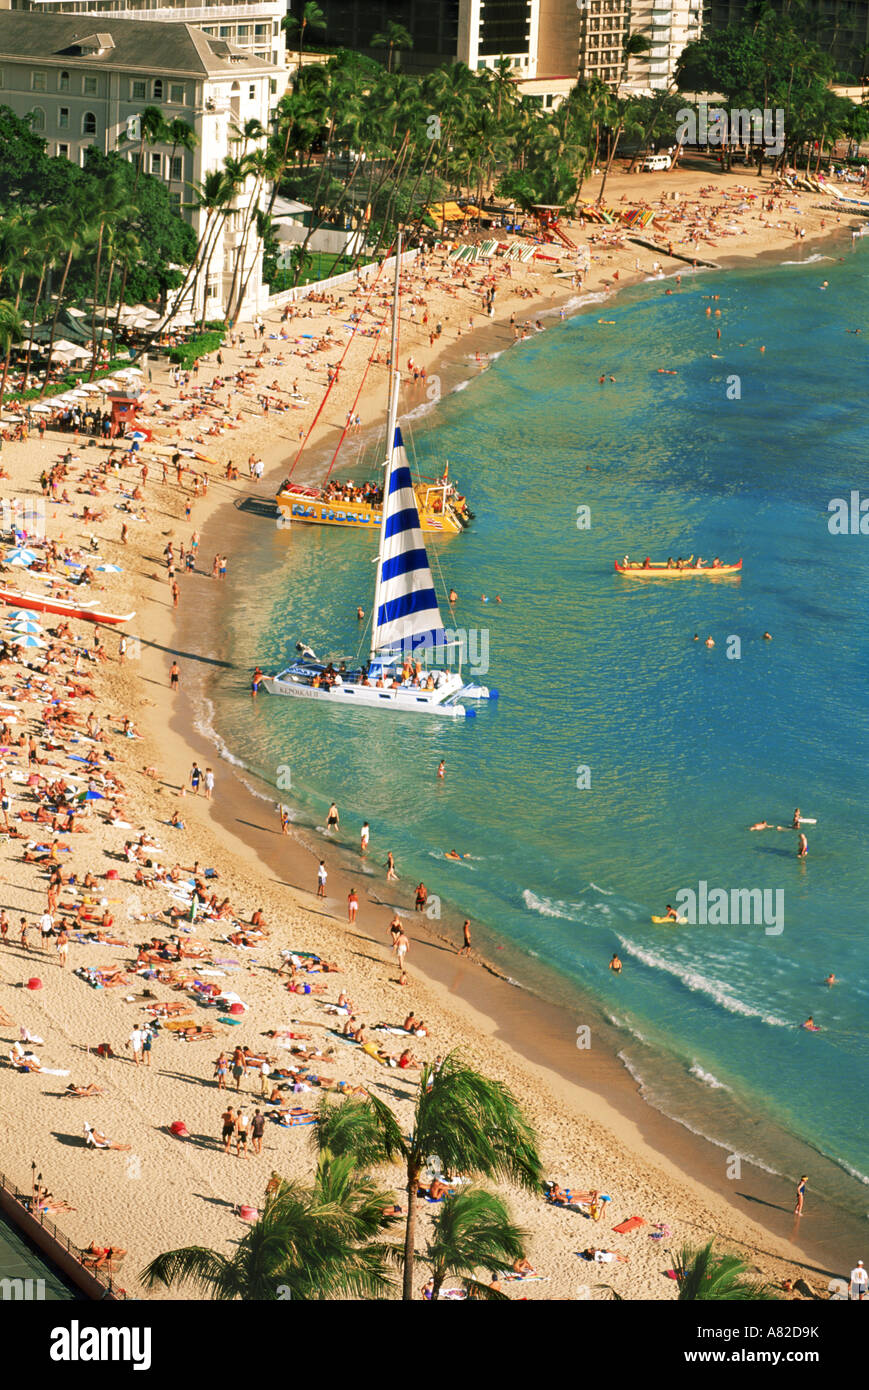 La plage de Waikiki à Honolulu avec catamarans, pirogue et baigneurs Banque D'Images